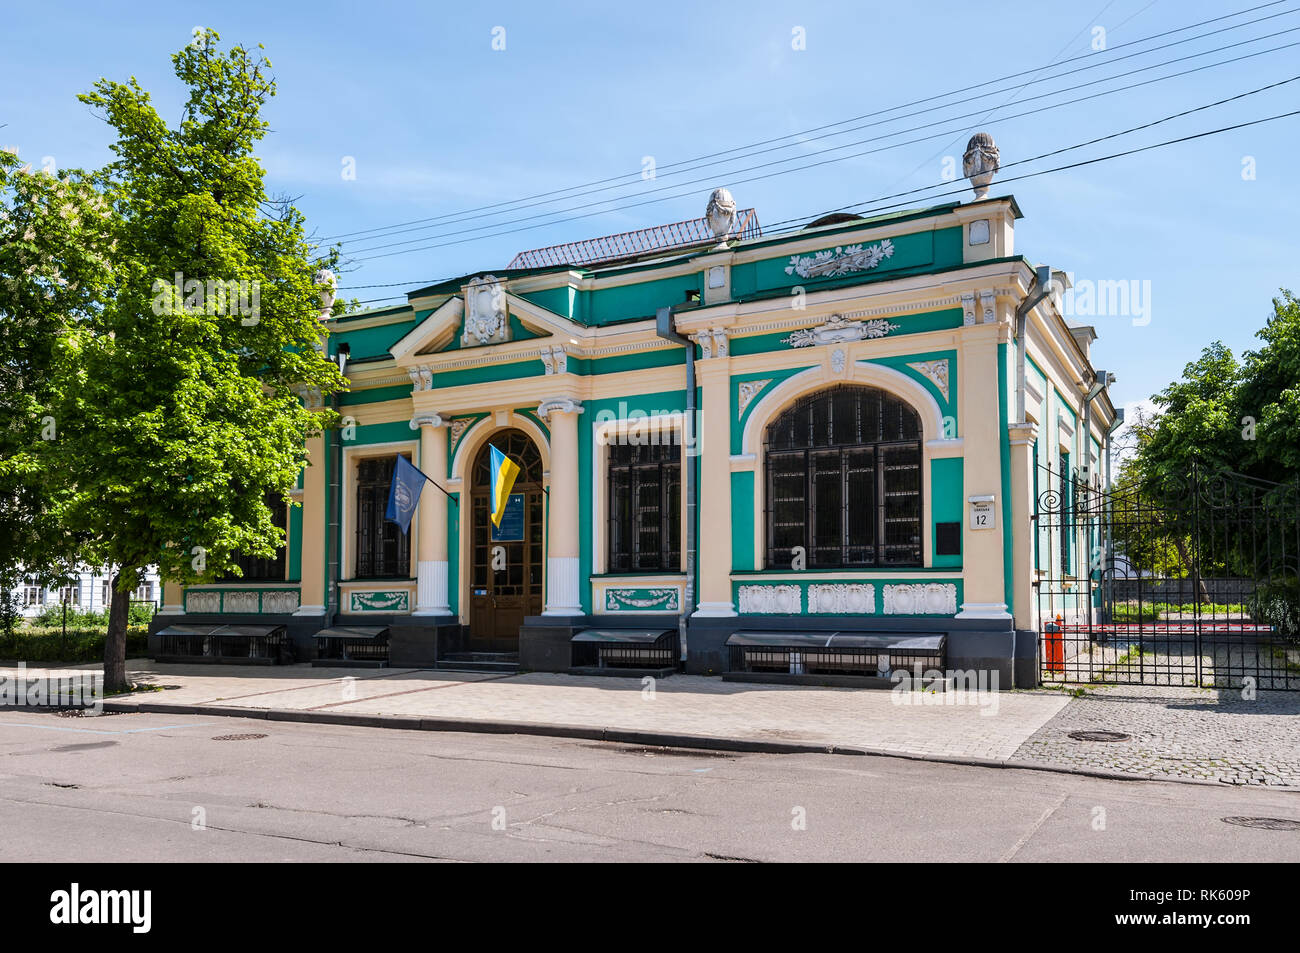 Kiew, Ukraine - 10. Mai 2015: Die Außenseite des alten Herrenhaus auf dem spasskaya Straße 12 (1912) im historischen Stadtteil Podil genannt (podol), Kiew Innenstadt. Stockfoto